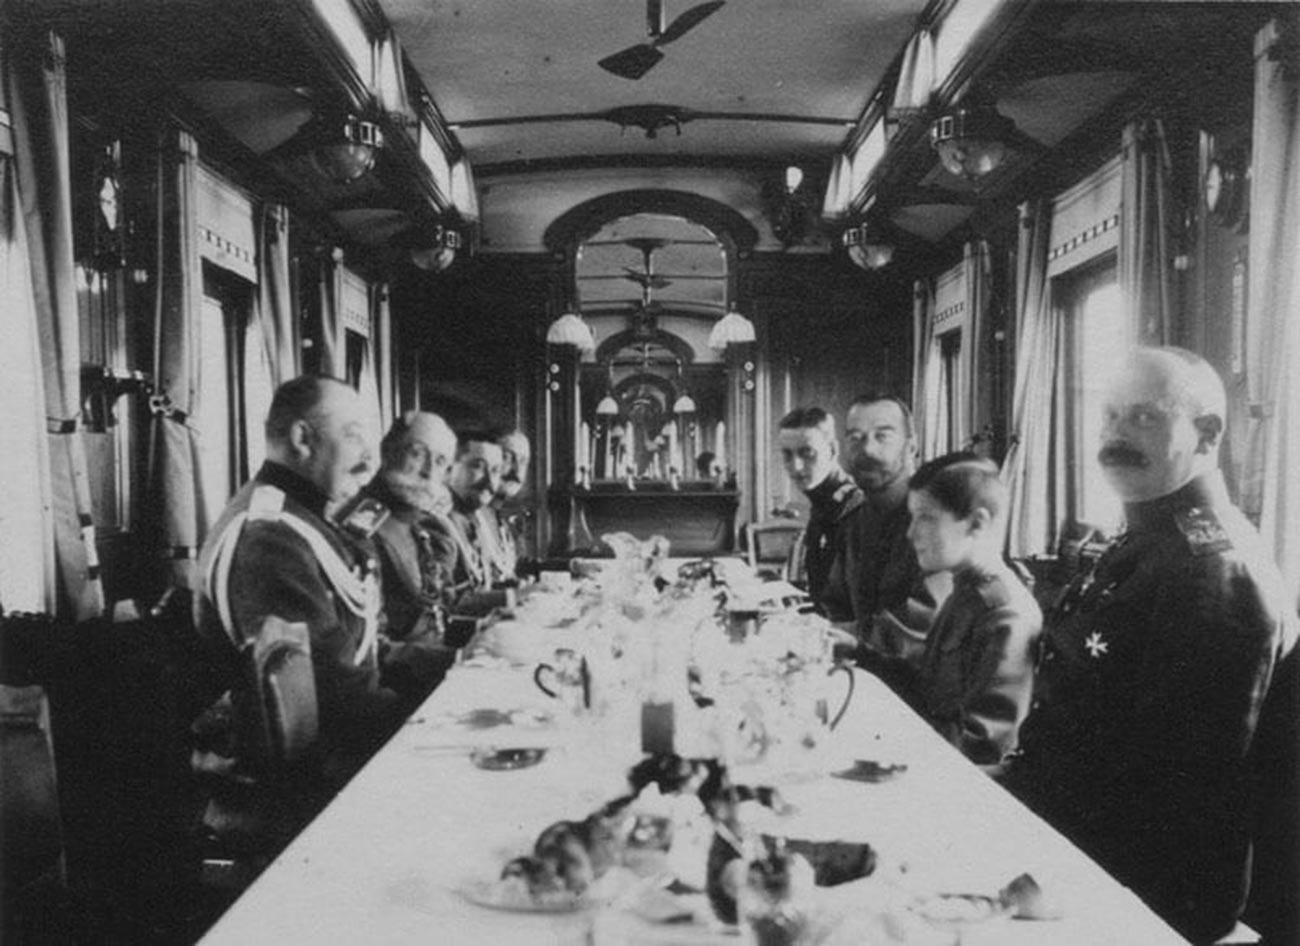 Le tsar dînant en compagnie de généraux
